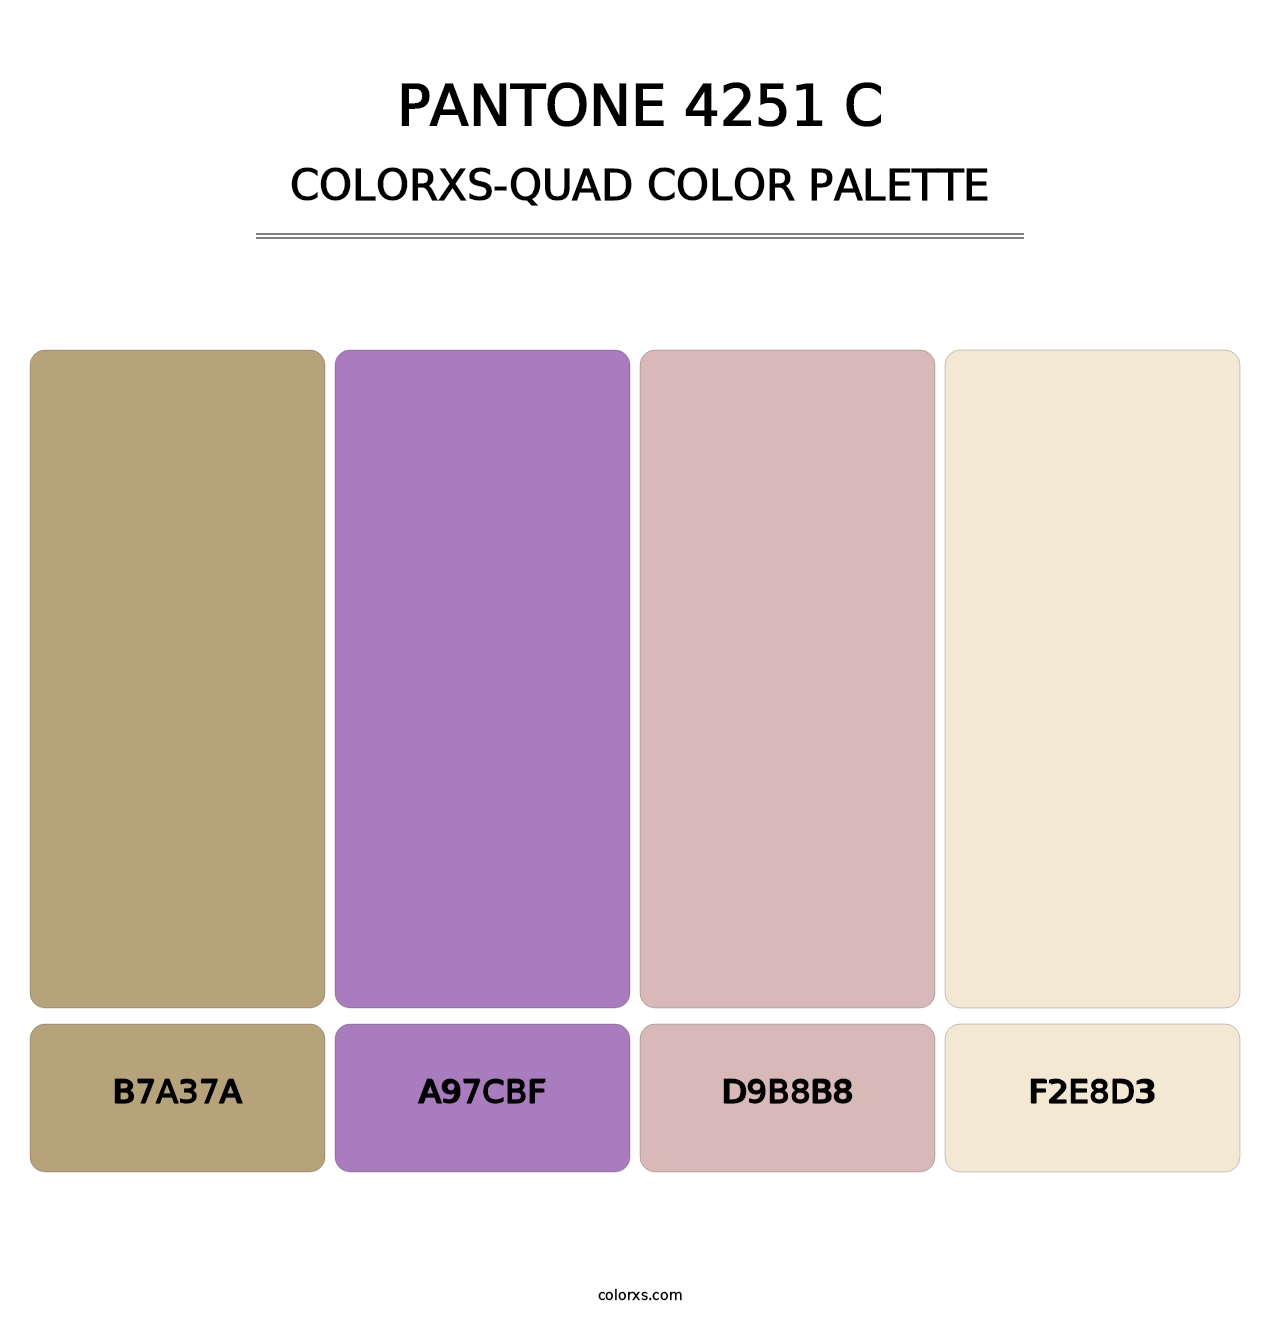 PANTONE 4251 C - Colorxs Quad Palette